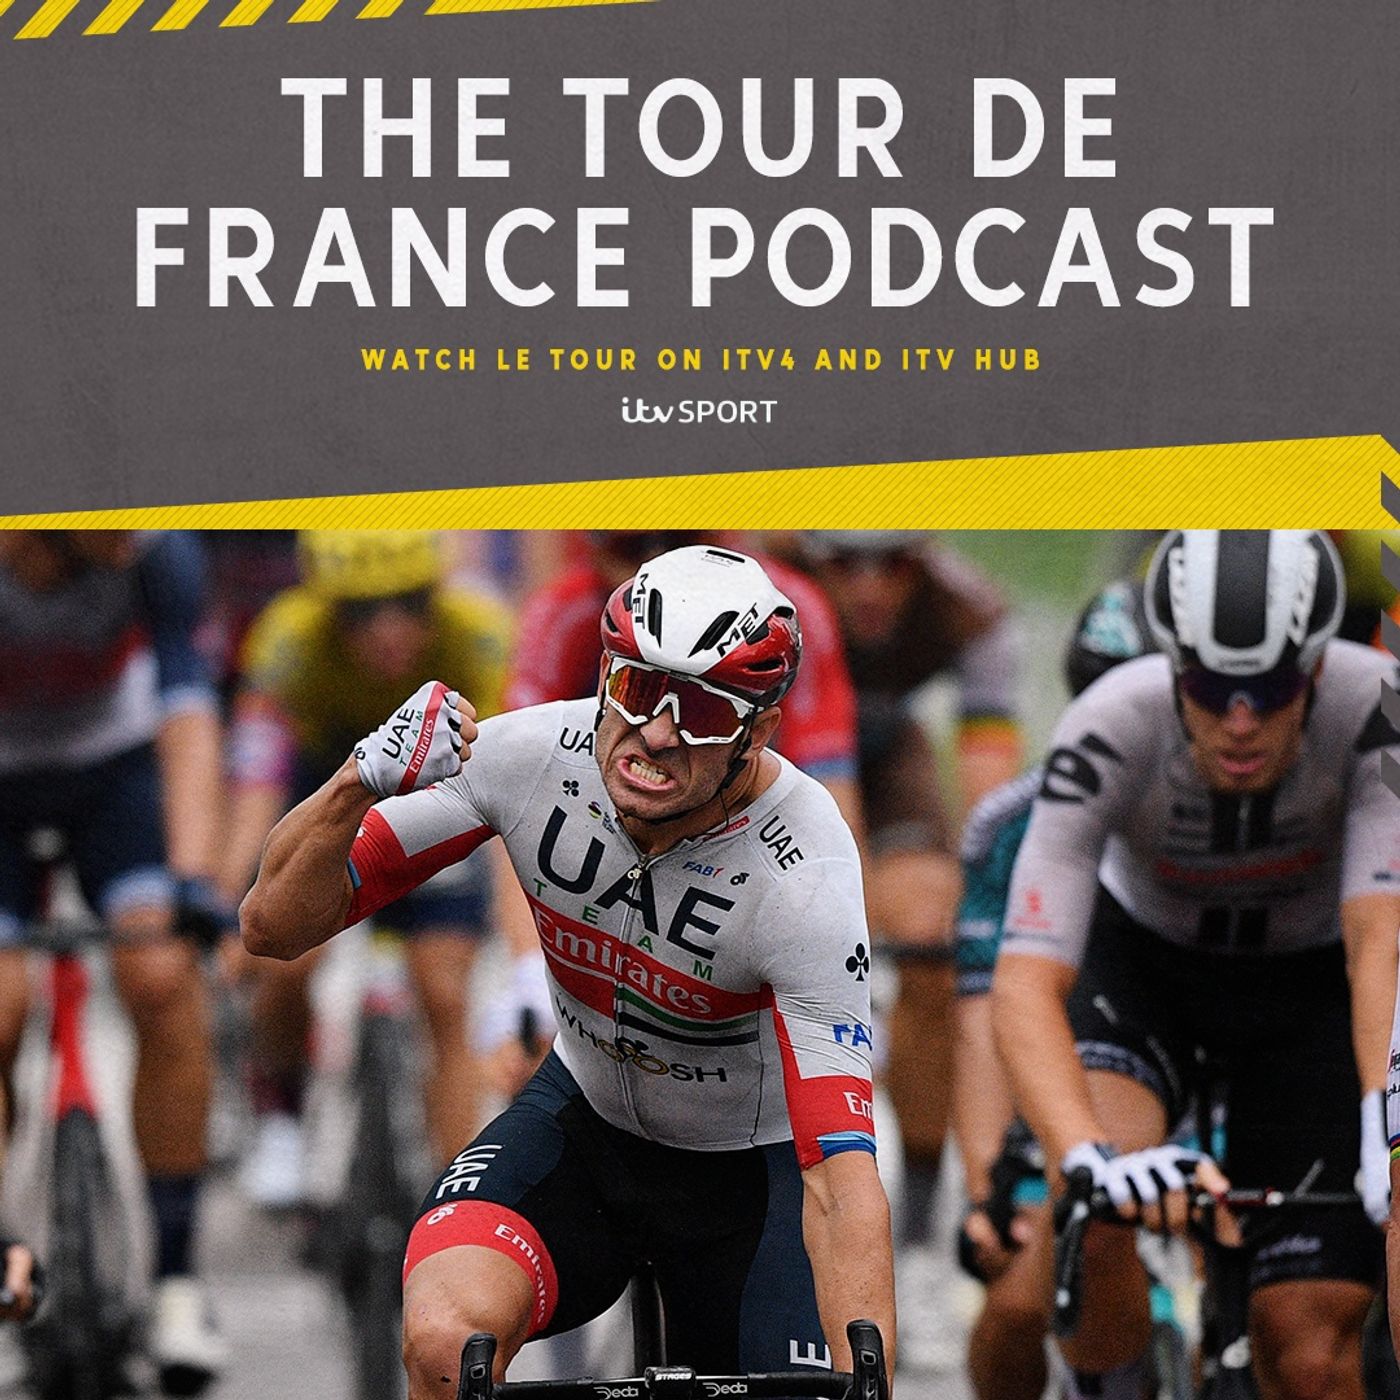 Tour de France 2020: Stage 1